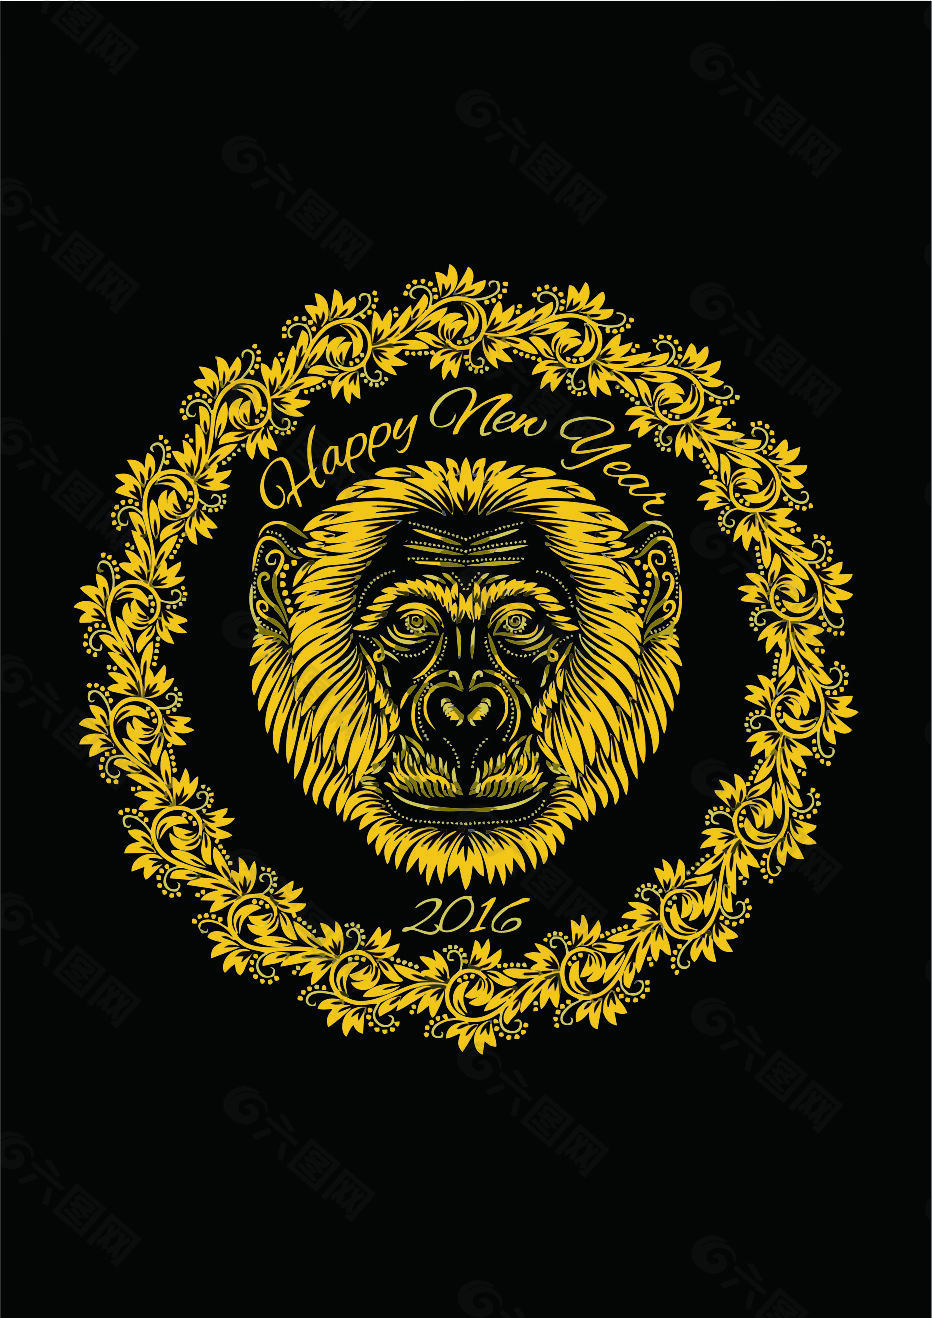 金色猴子2016节日元素